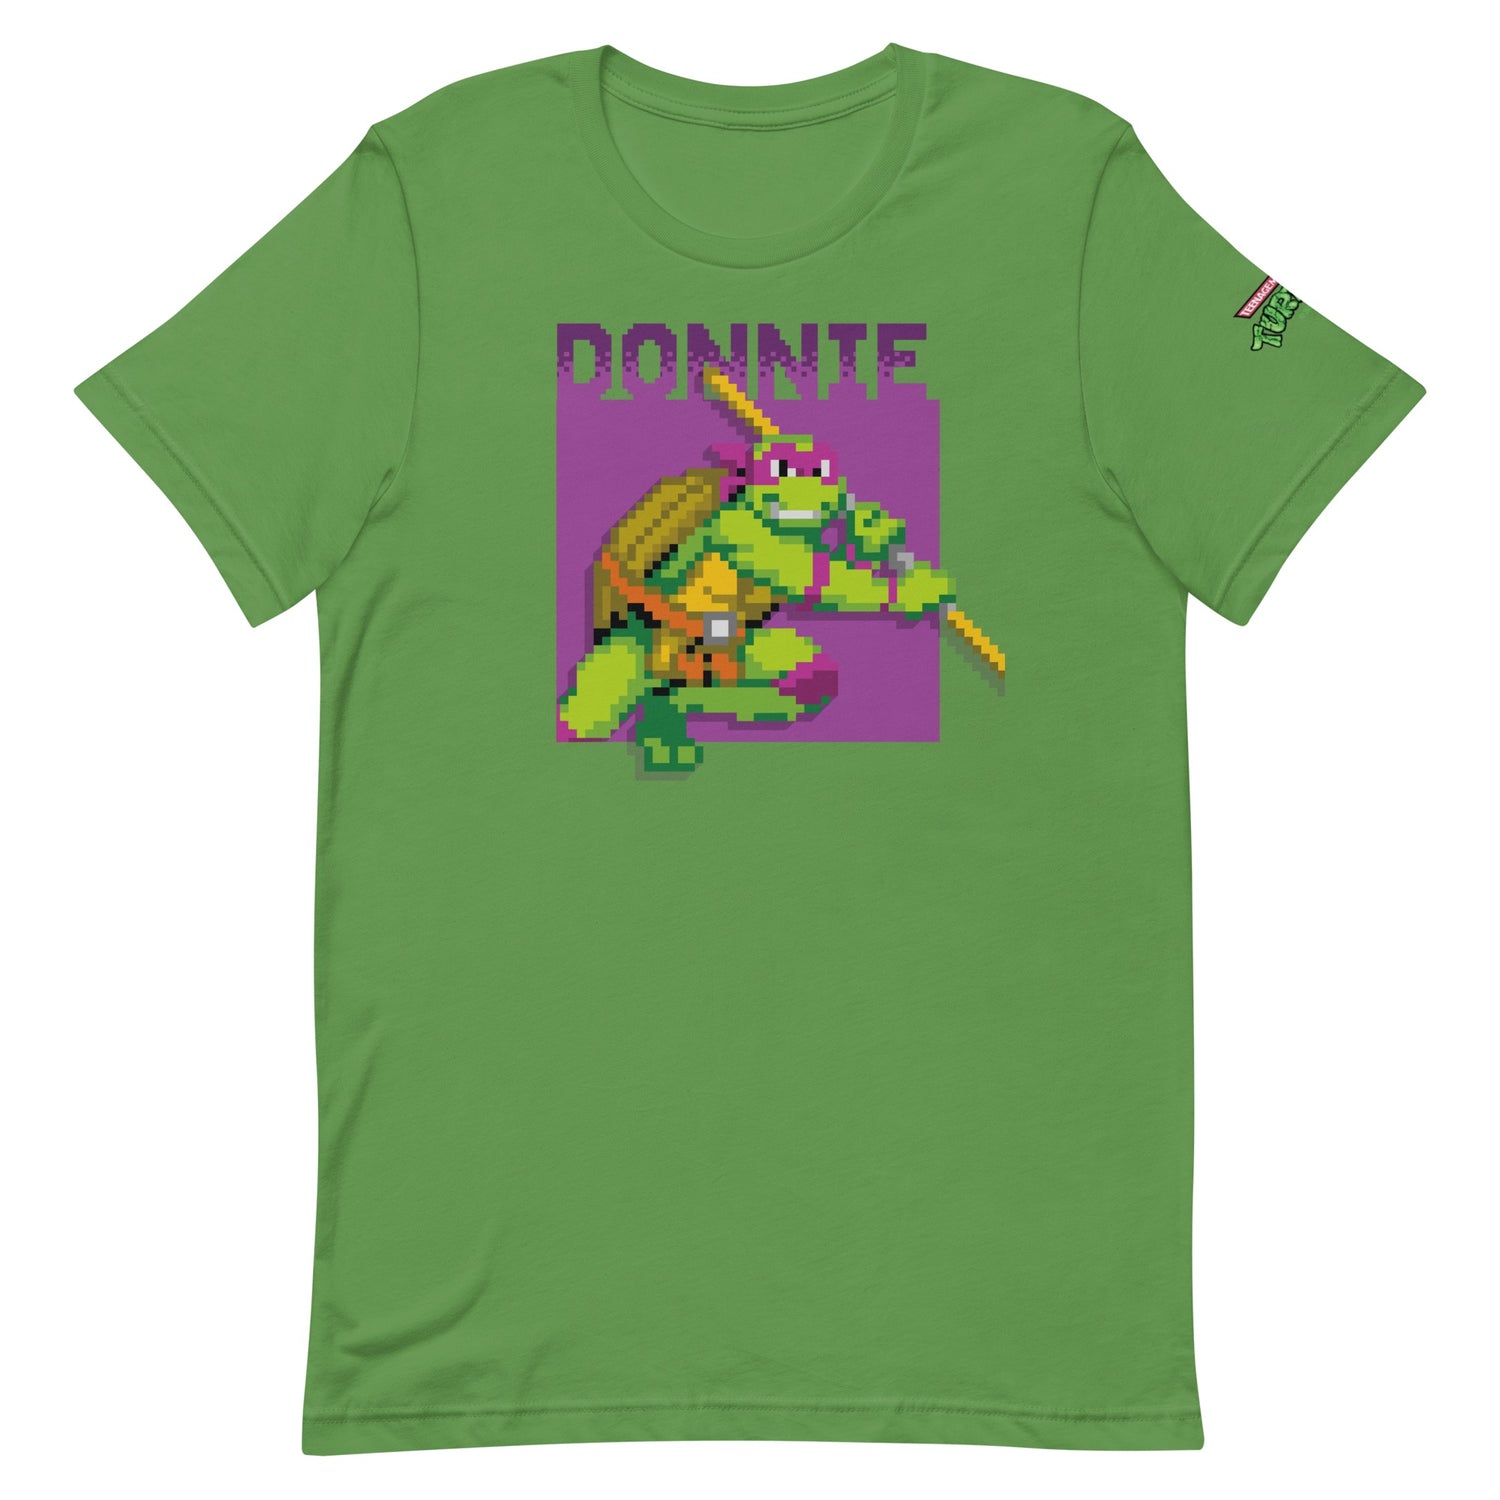 Teenage Mutant Ninja Turtles Donnie Arcade Ninja Adult Short Sleeve T-Shirt